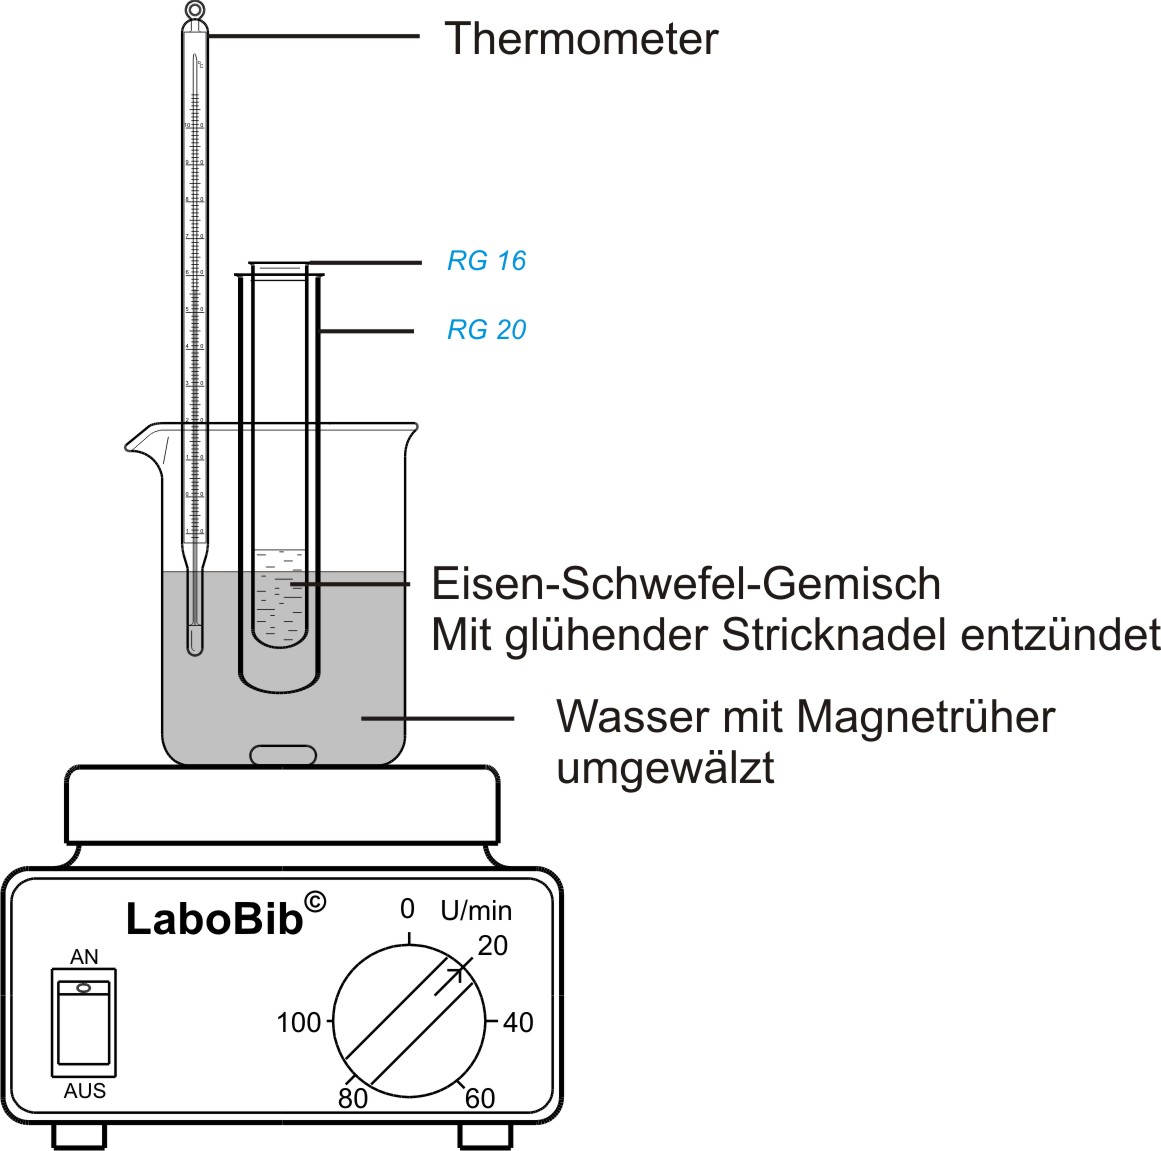 Reaktionsaufbau: Reagenzglas mit Eisen-Schwefelgemisch in einem Wasserbad zur Messung der Temperatur